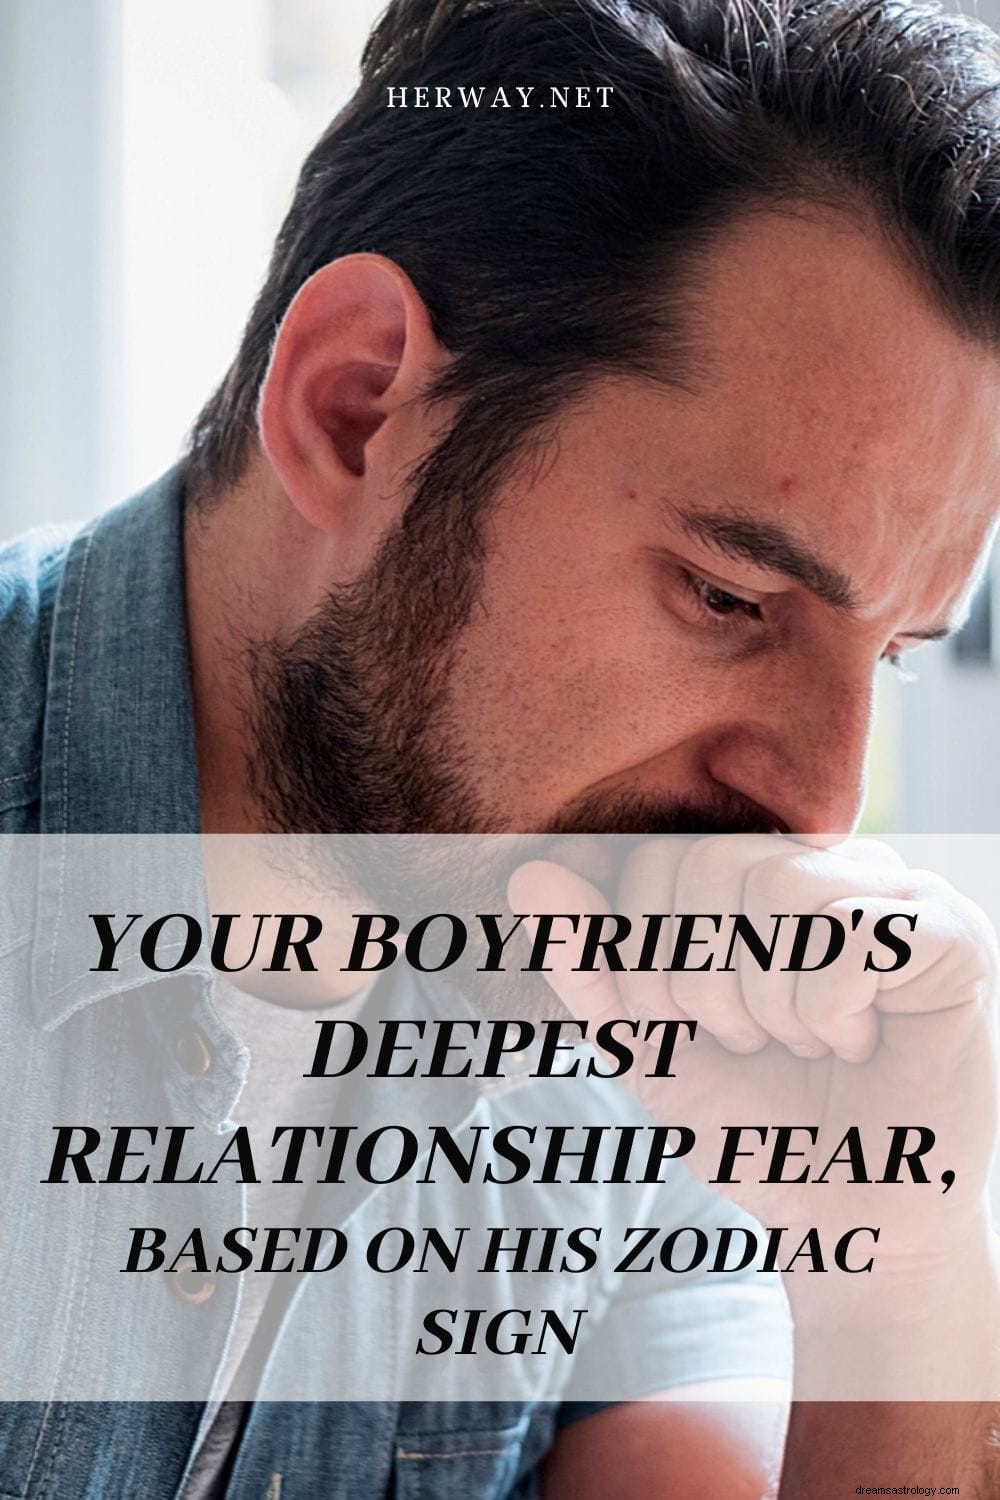 彼の星座に基づく、あなたのボーイフレンドの最も深い人間関係への恐怖